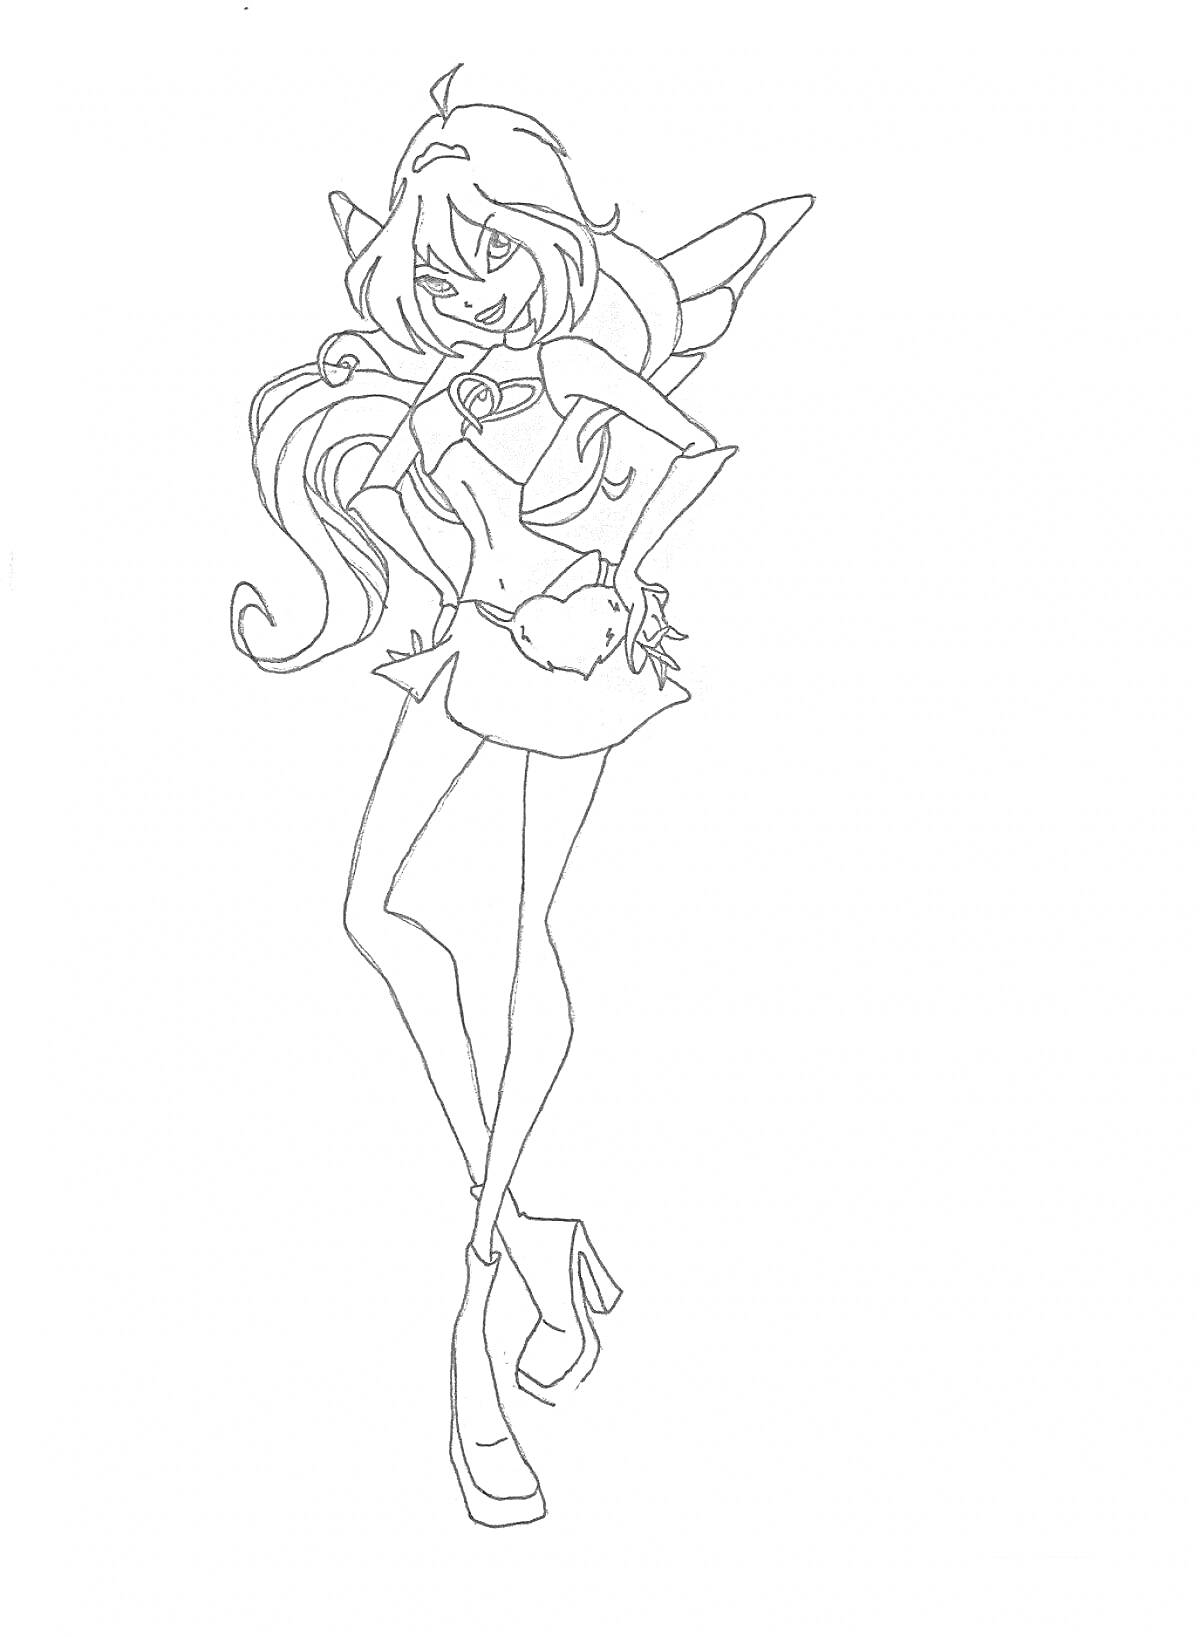 Раскраска Фея из Винкс в форме Чармикс с длинными волосами и крыльями, одетая в топ, юбку и высокие каблуки